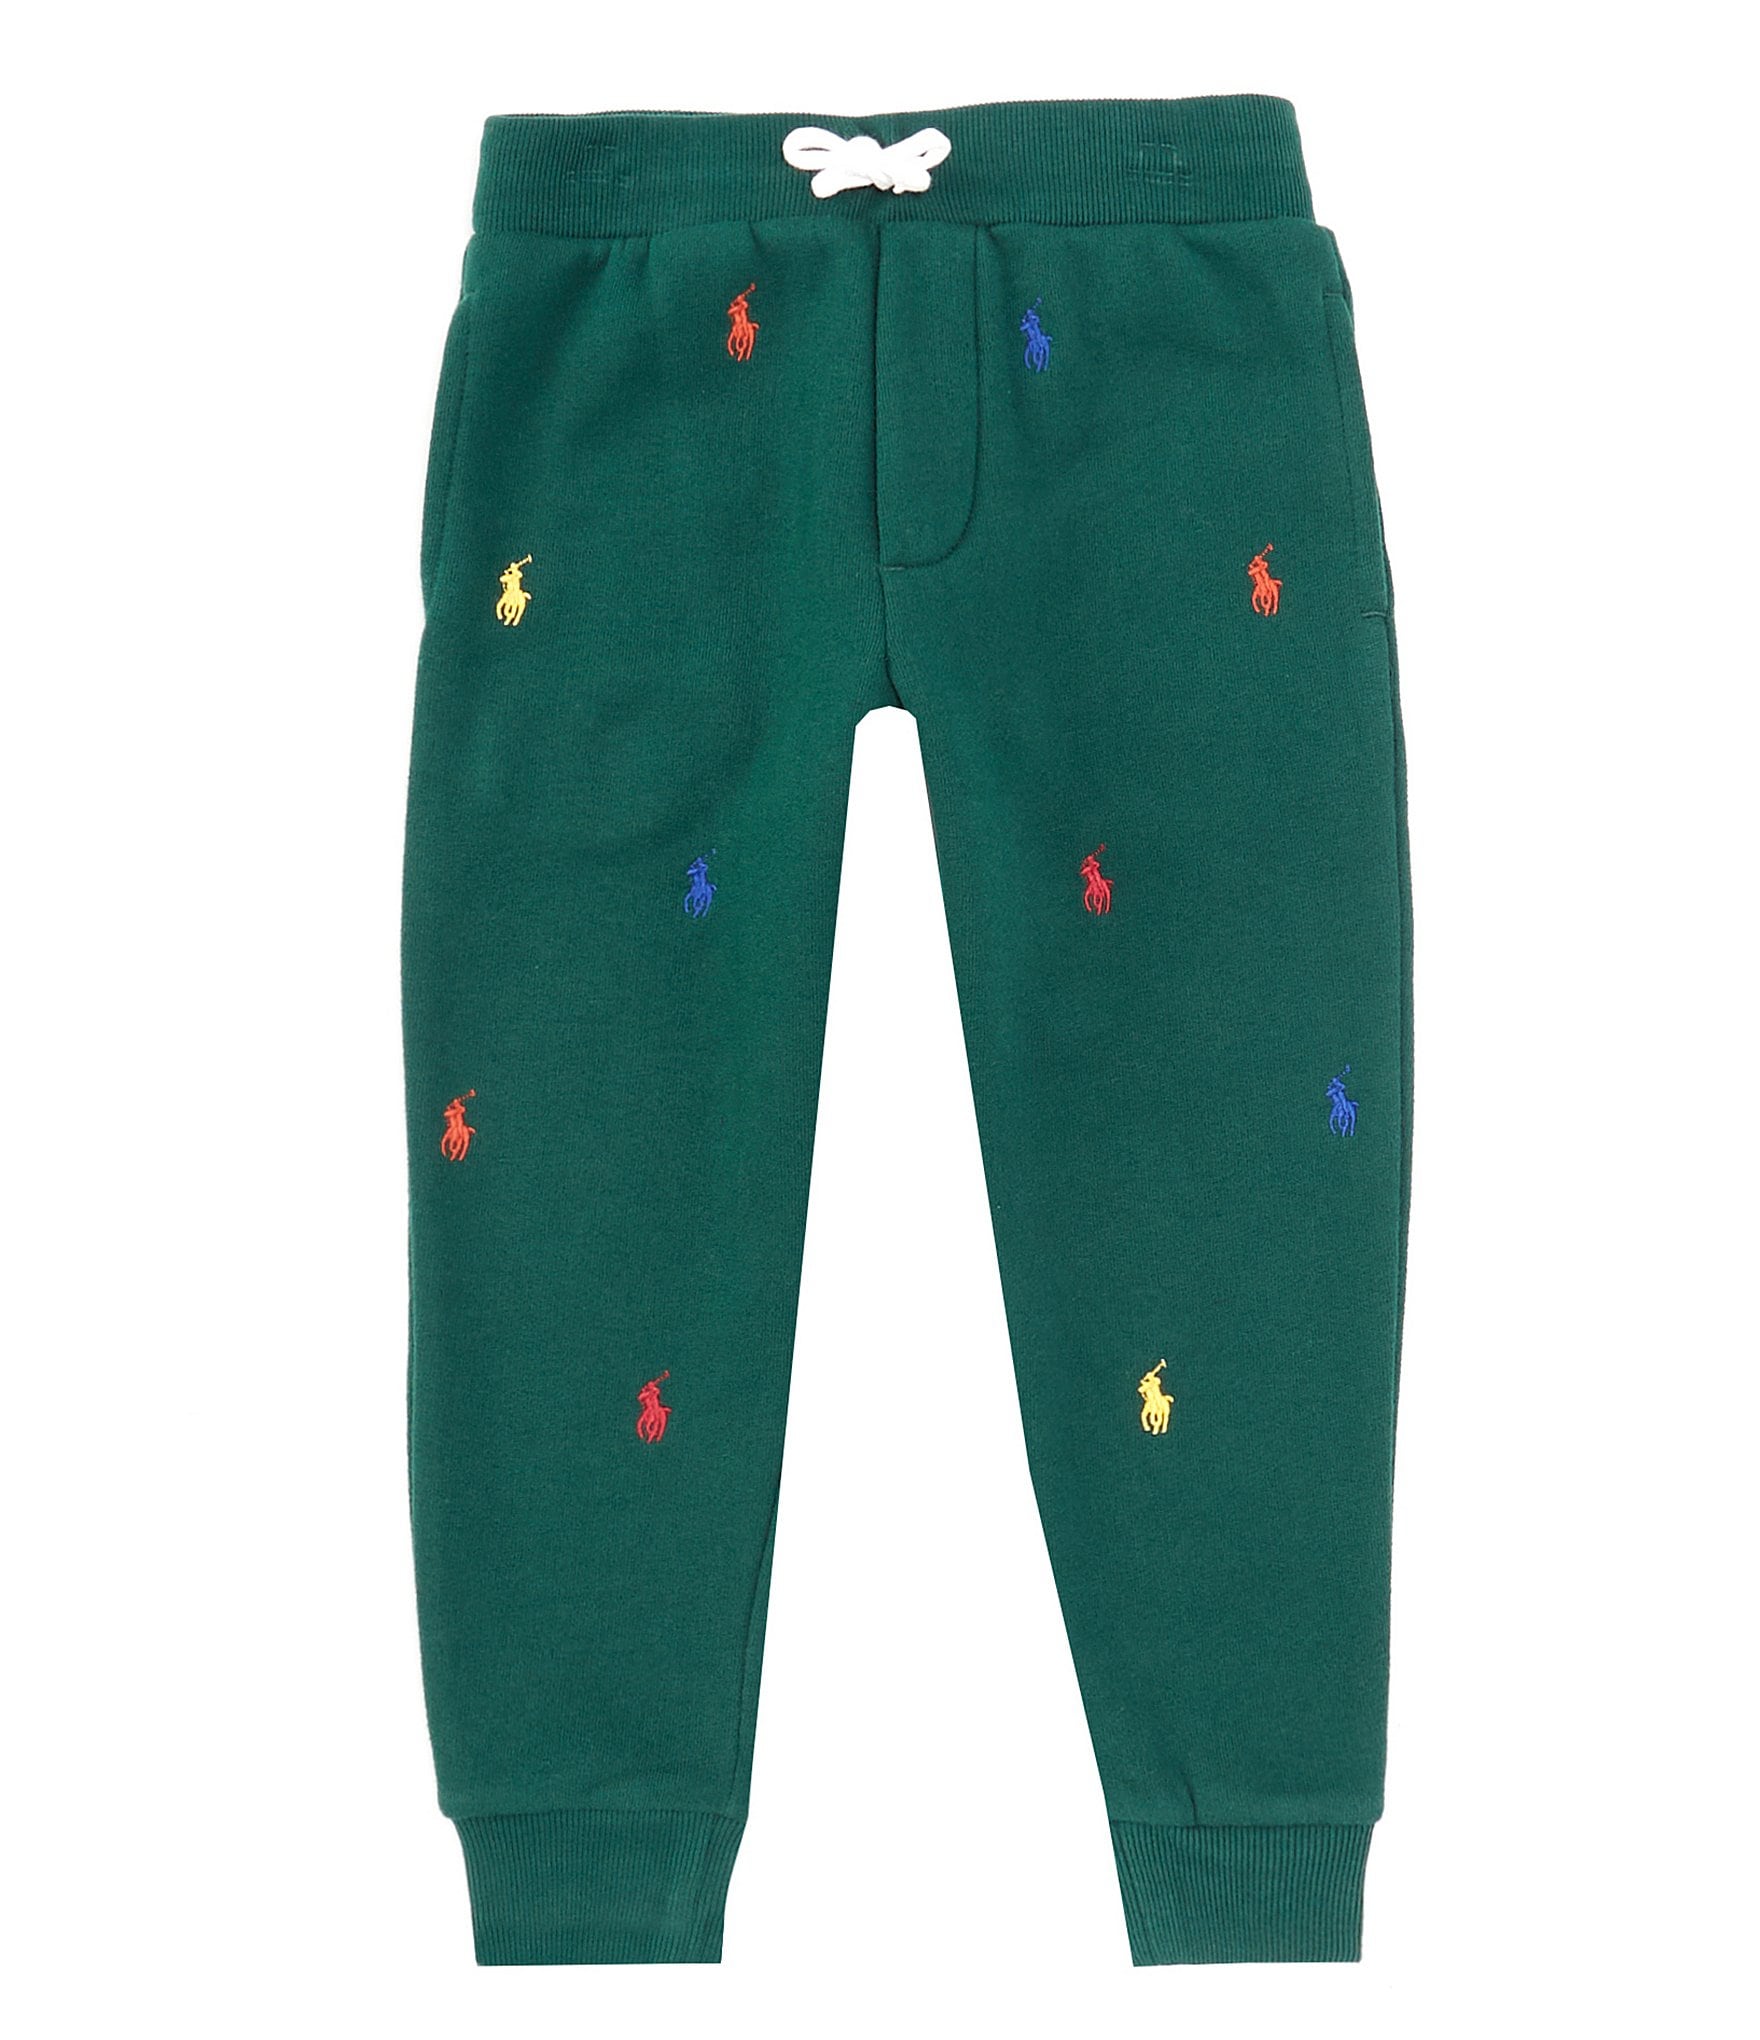 Under Armour Little Boys 2T-7 Long Sleeve Full Zip Hooded Branded Logo  Jogger Pants Set